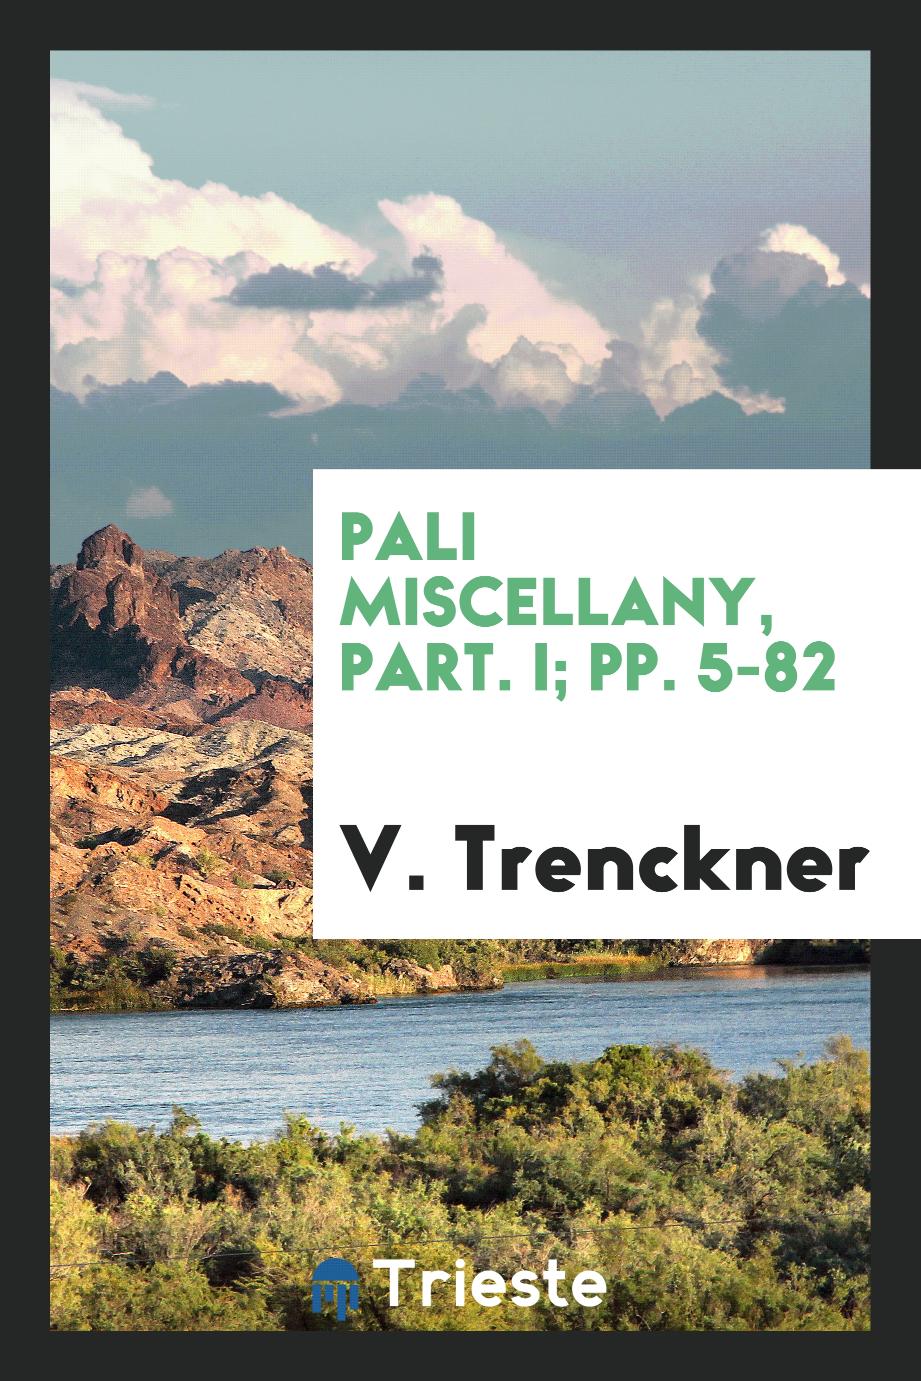 Pali Miscellany, Part. I; pp. 5-82